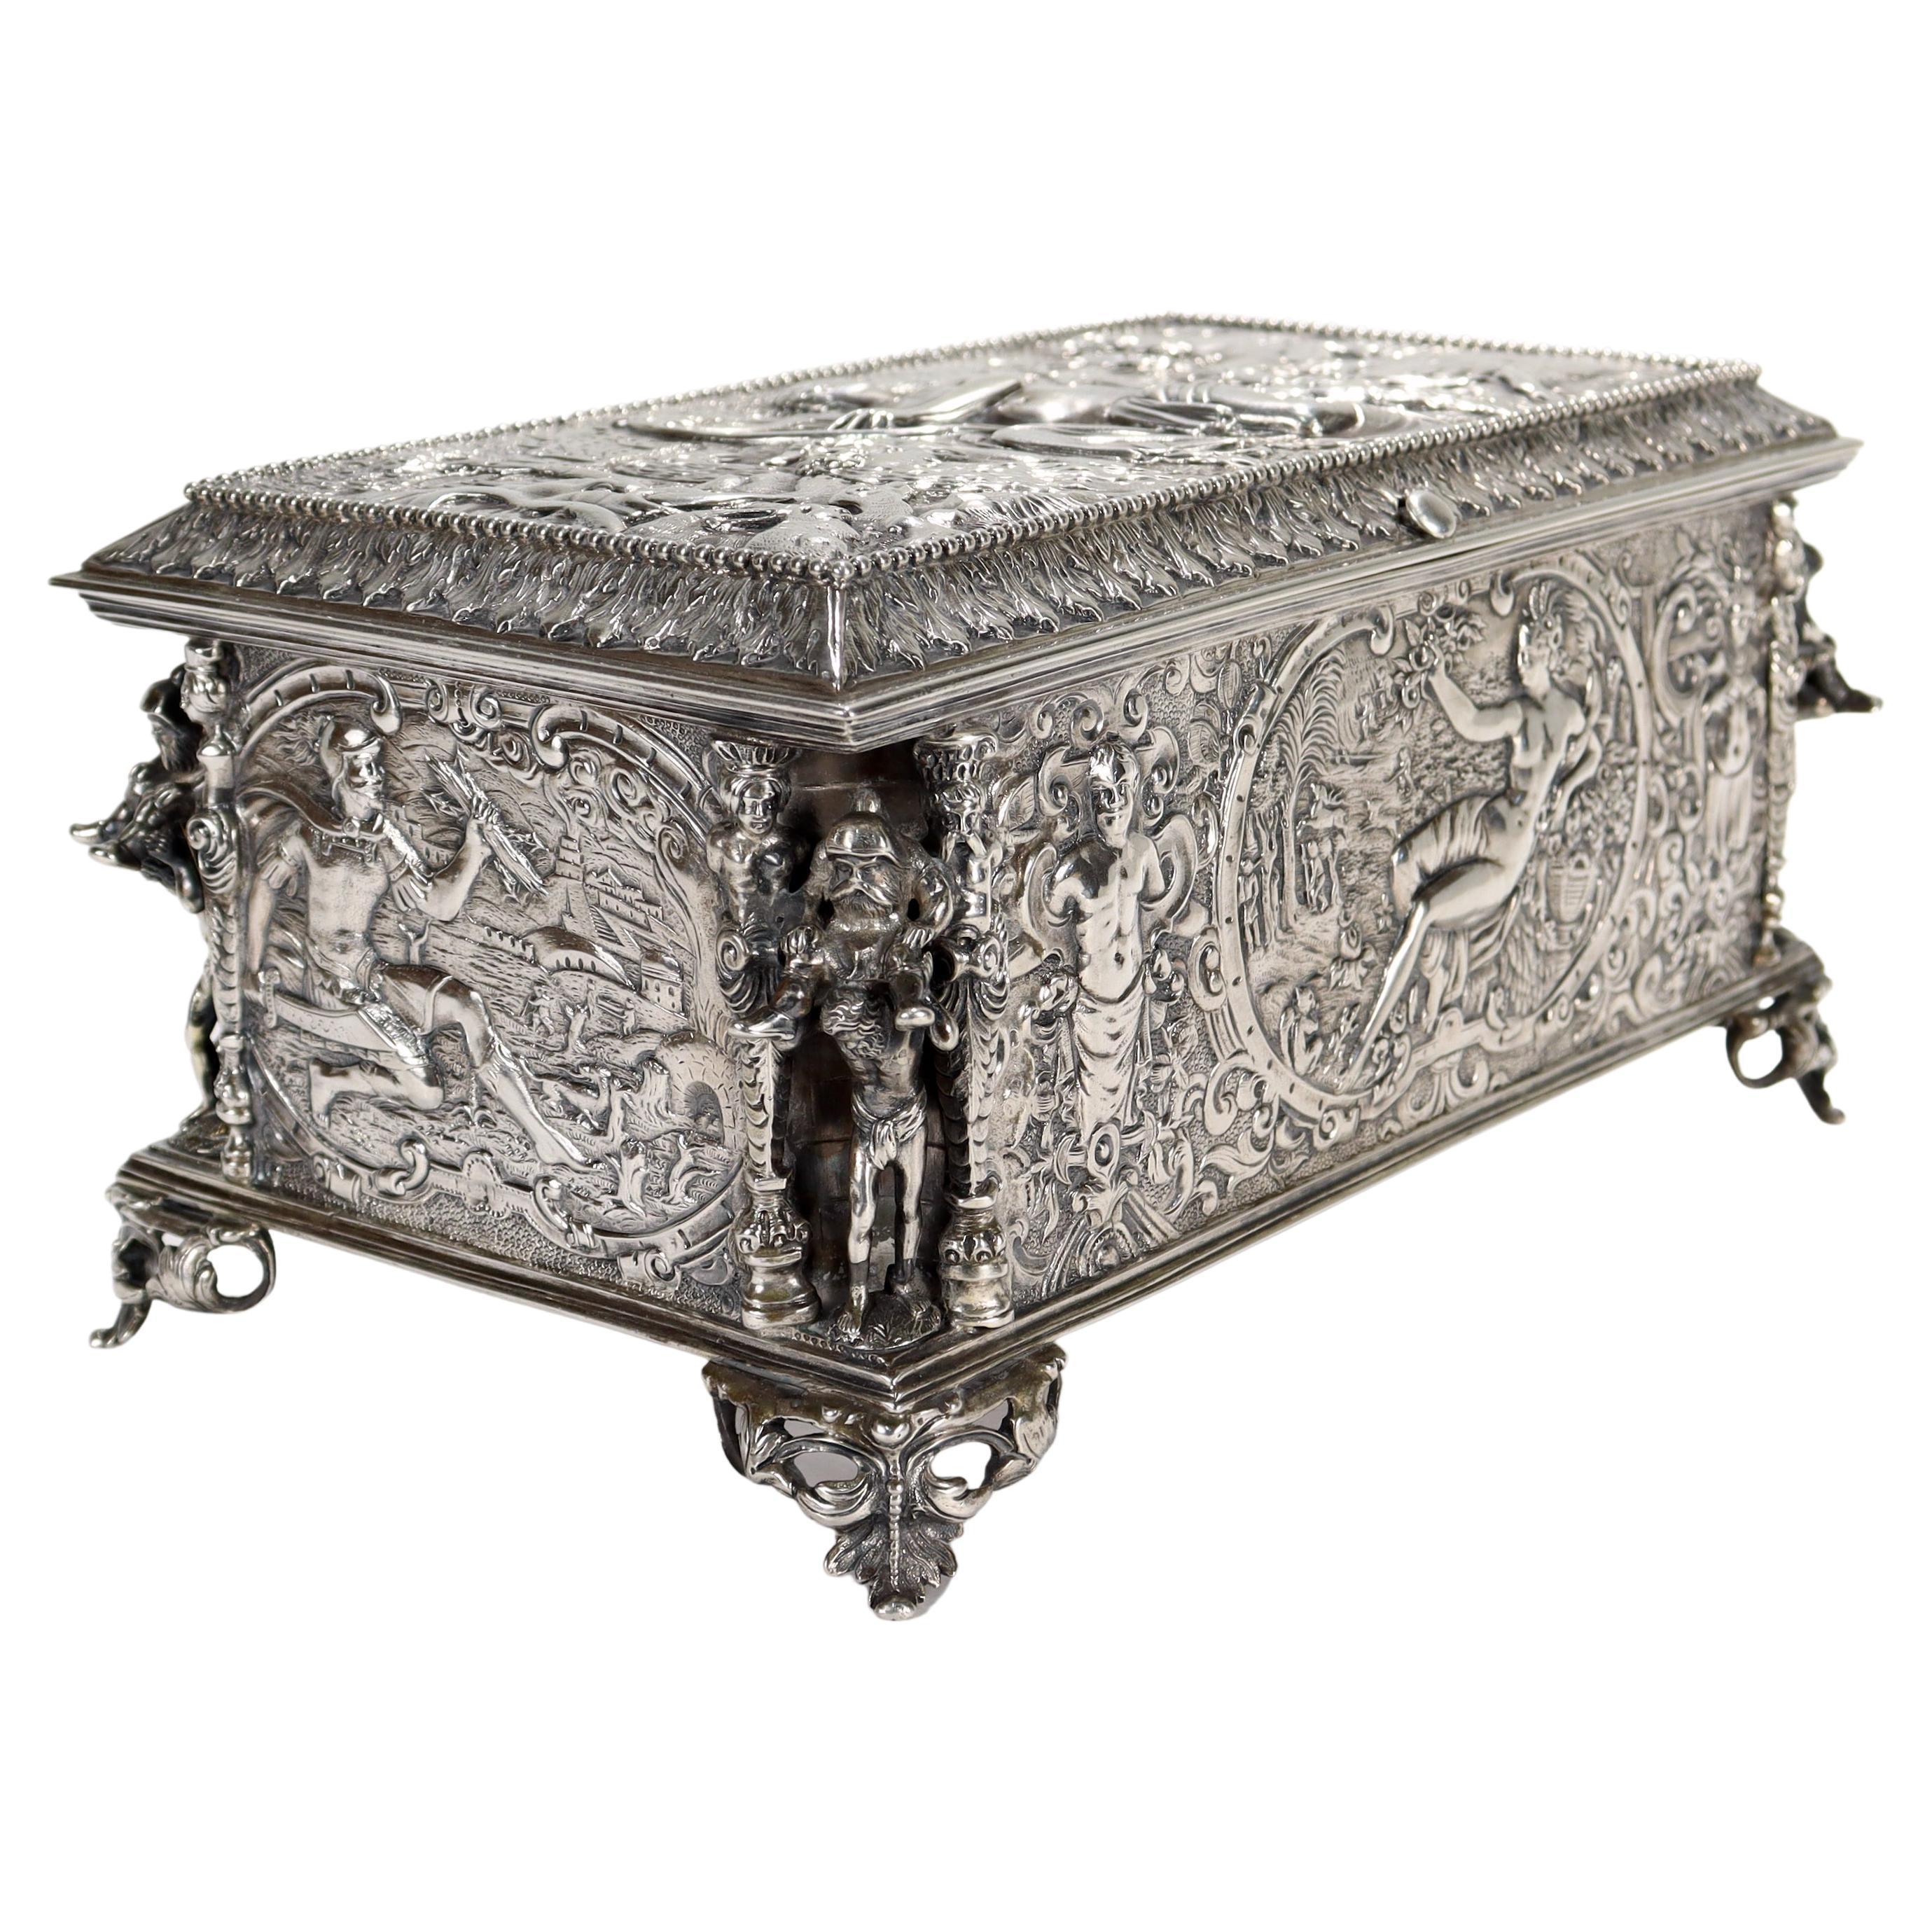 Antique German Figural Renaissance Revival Solid Silver Table Box or Casket